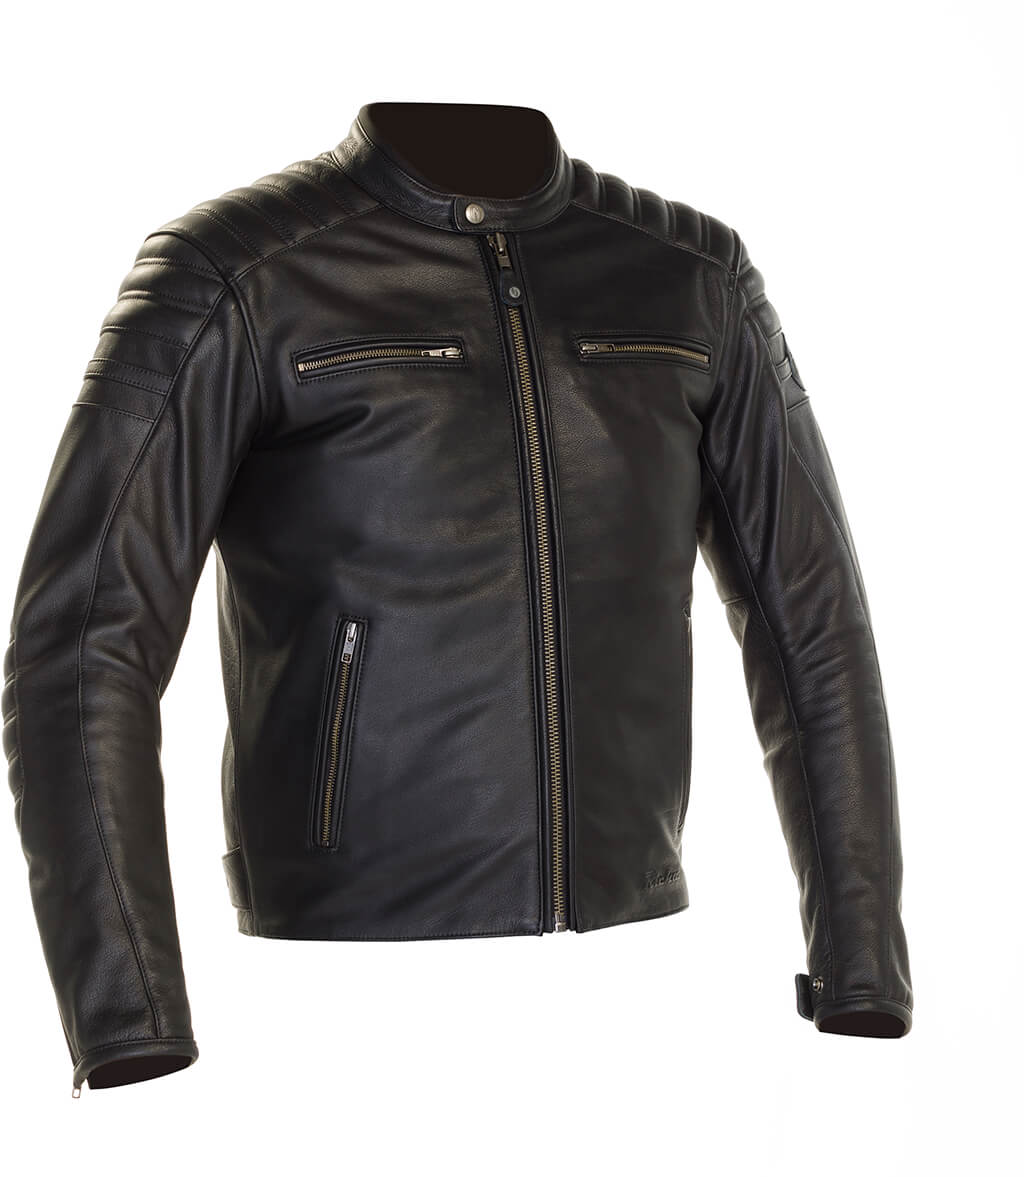 Richa Daytona 2 Leather Jacket - Style & Performance!